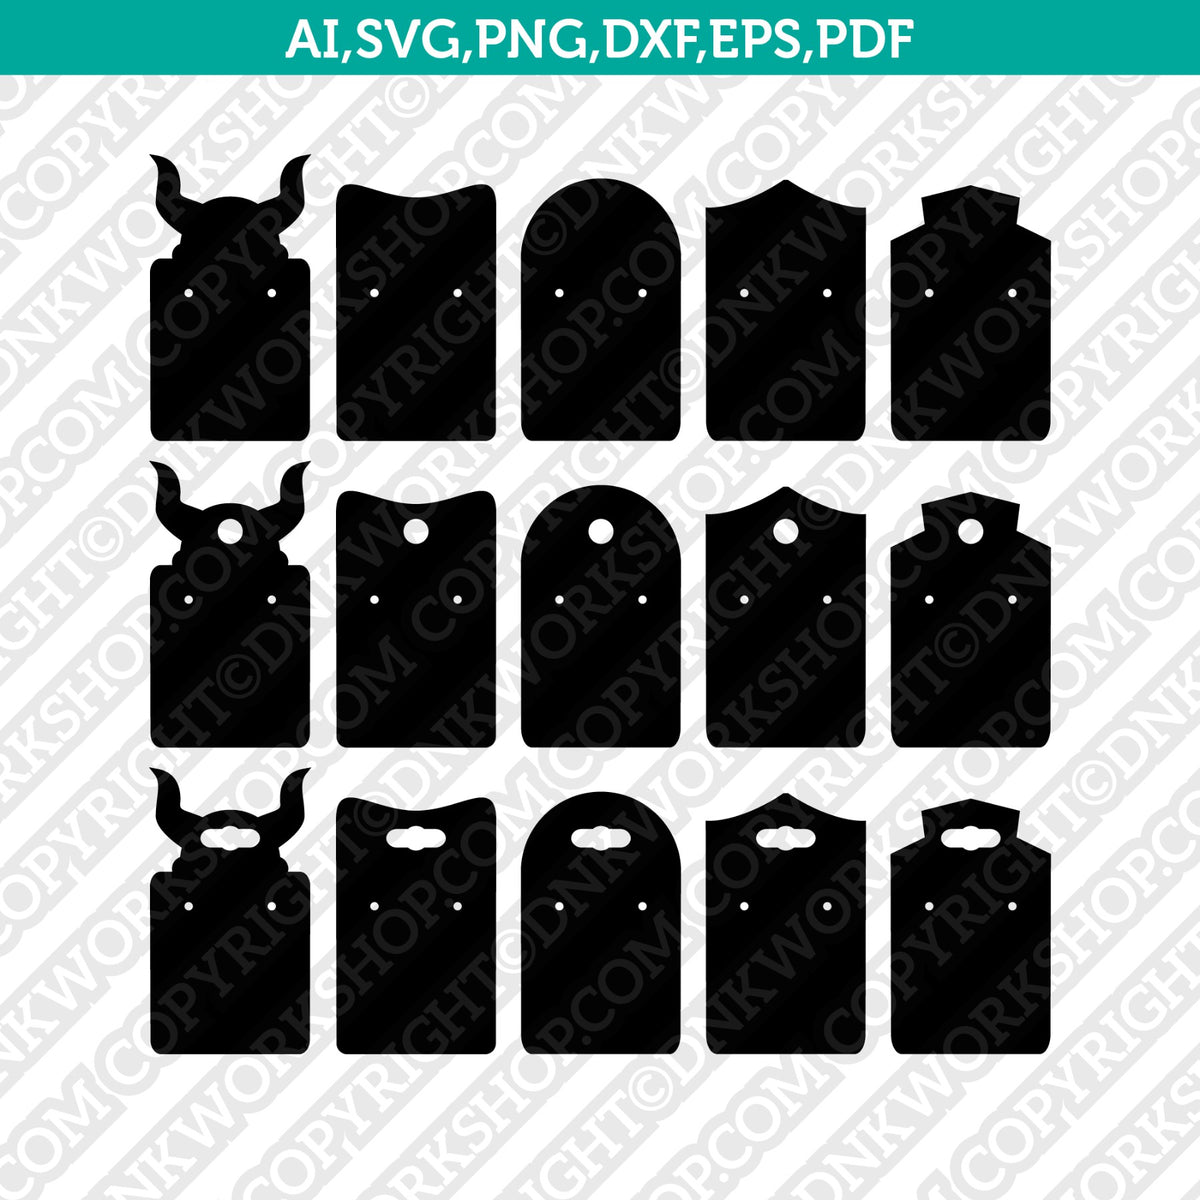 Earring Display card template Bundle svg, Earring (2255080)